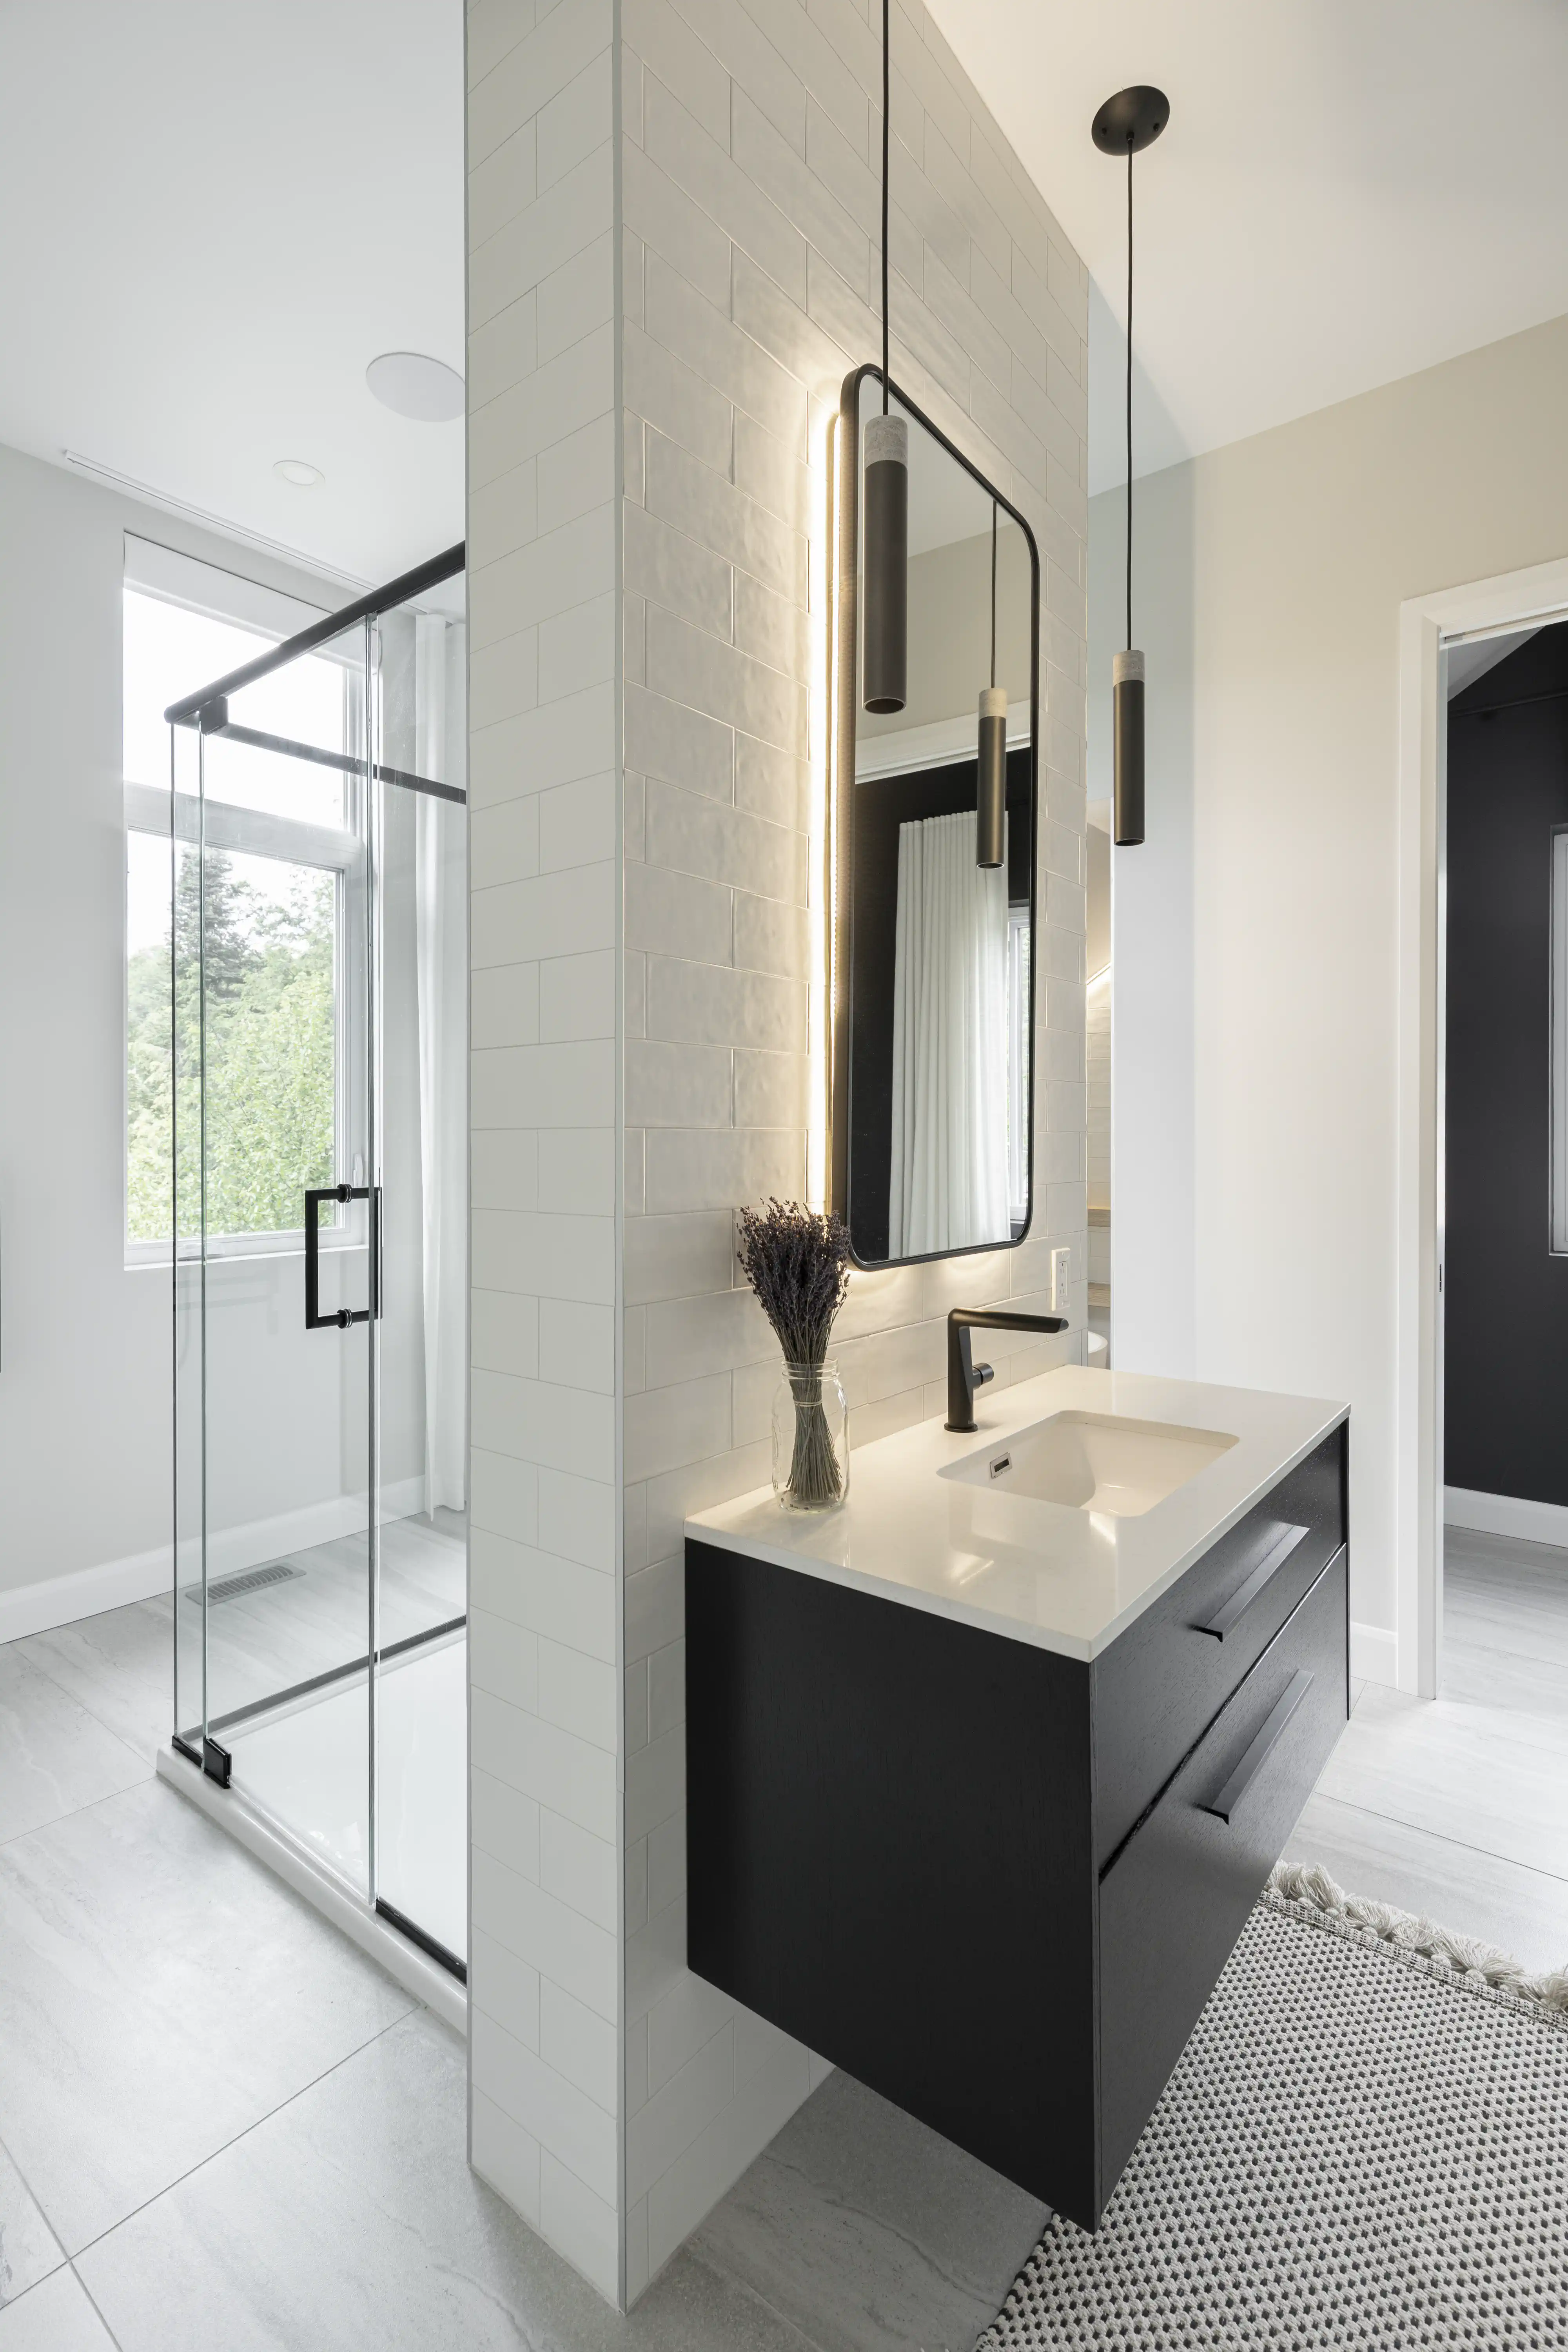 Une salle de bain en noir et blanc avec une cabine de douche en verre et une fenêtre avec vue, intérieur signé Sarah Brown Design